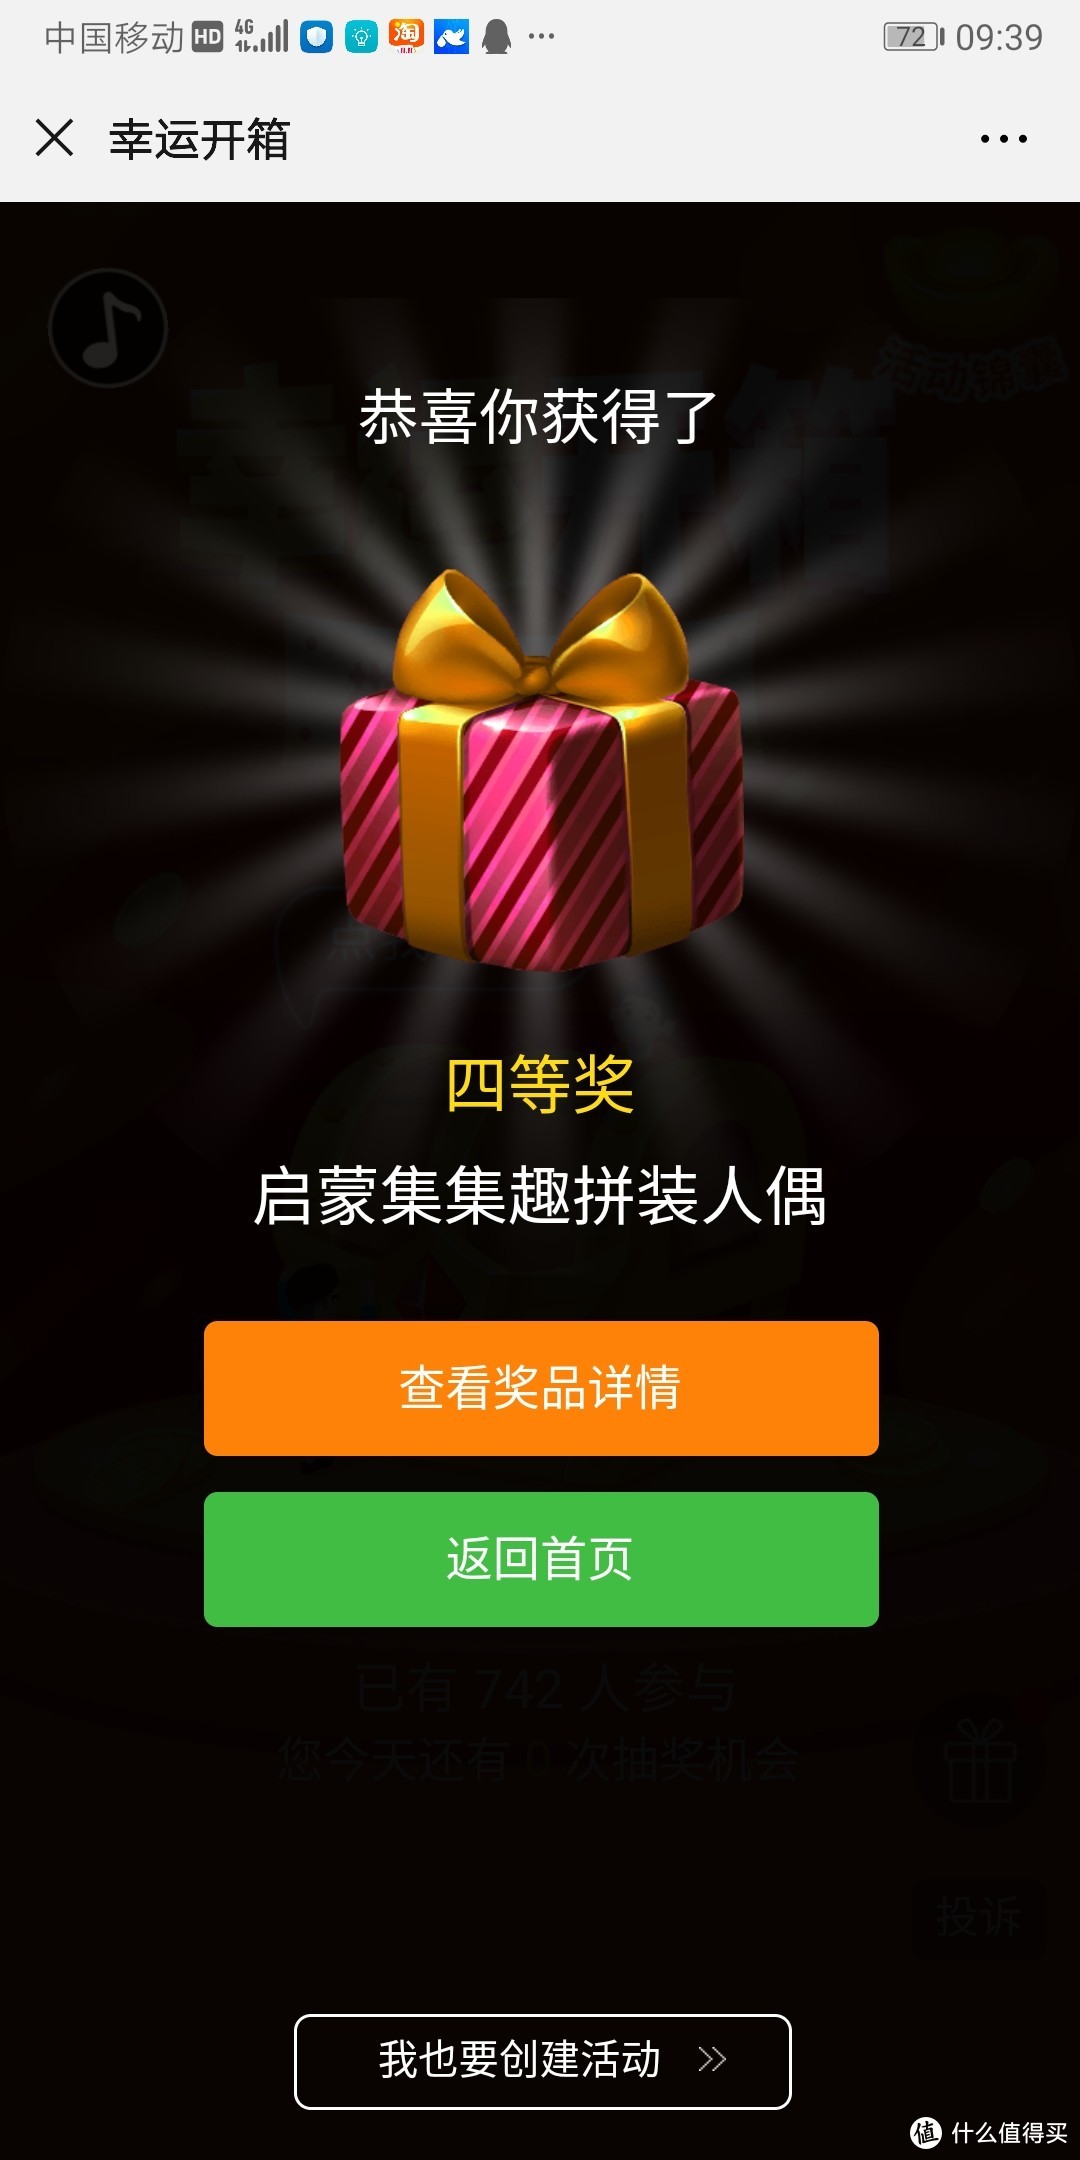 一个人玩“赚”上海玩博会，看我单枪匹马一天撸到多少金币和礼品？